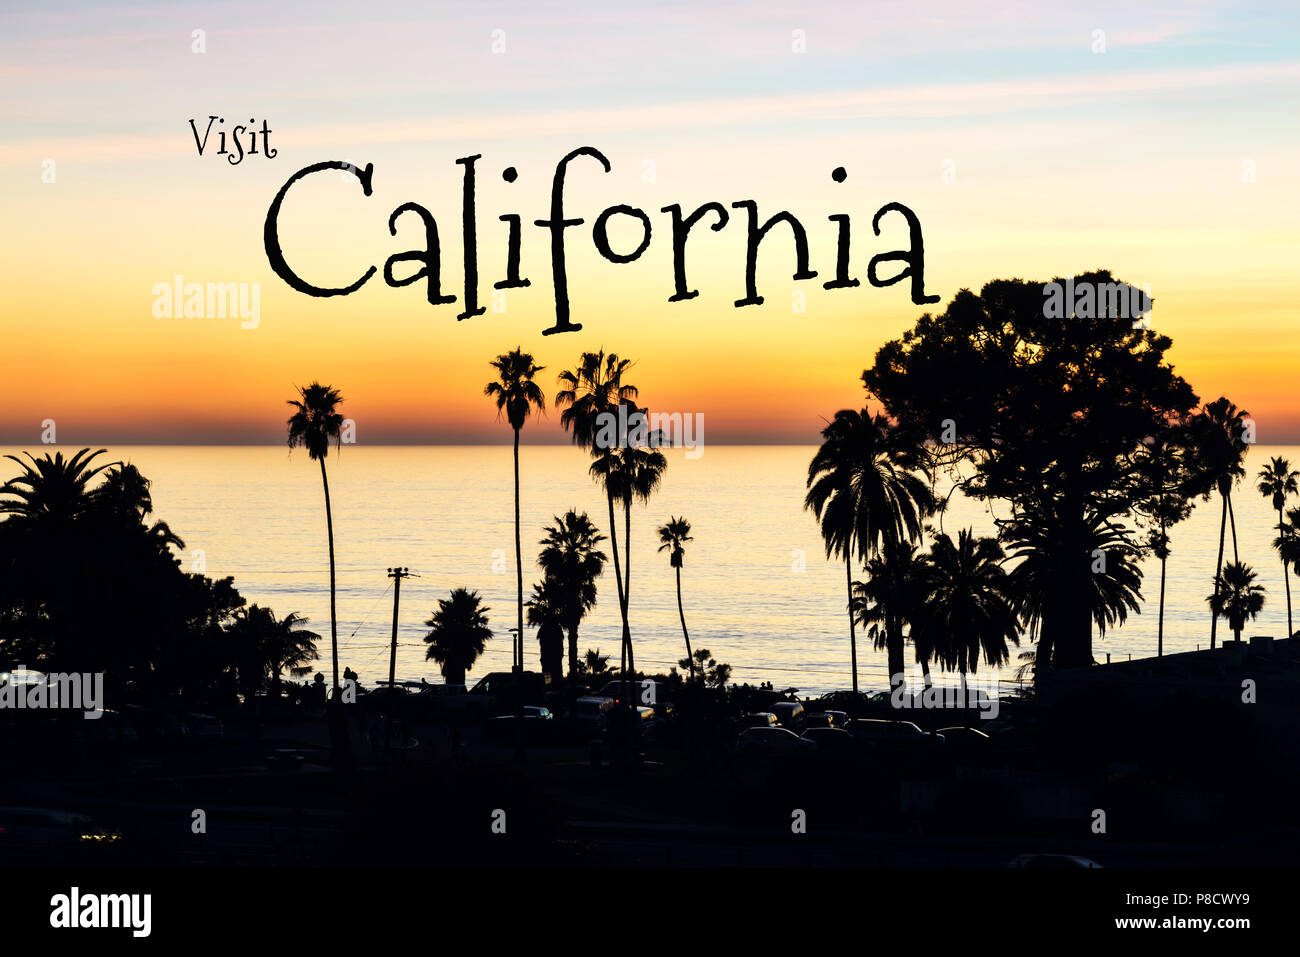 Concepto de viaje. Fotografía de Encinitas, California, EE.UU. Foto de stock